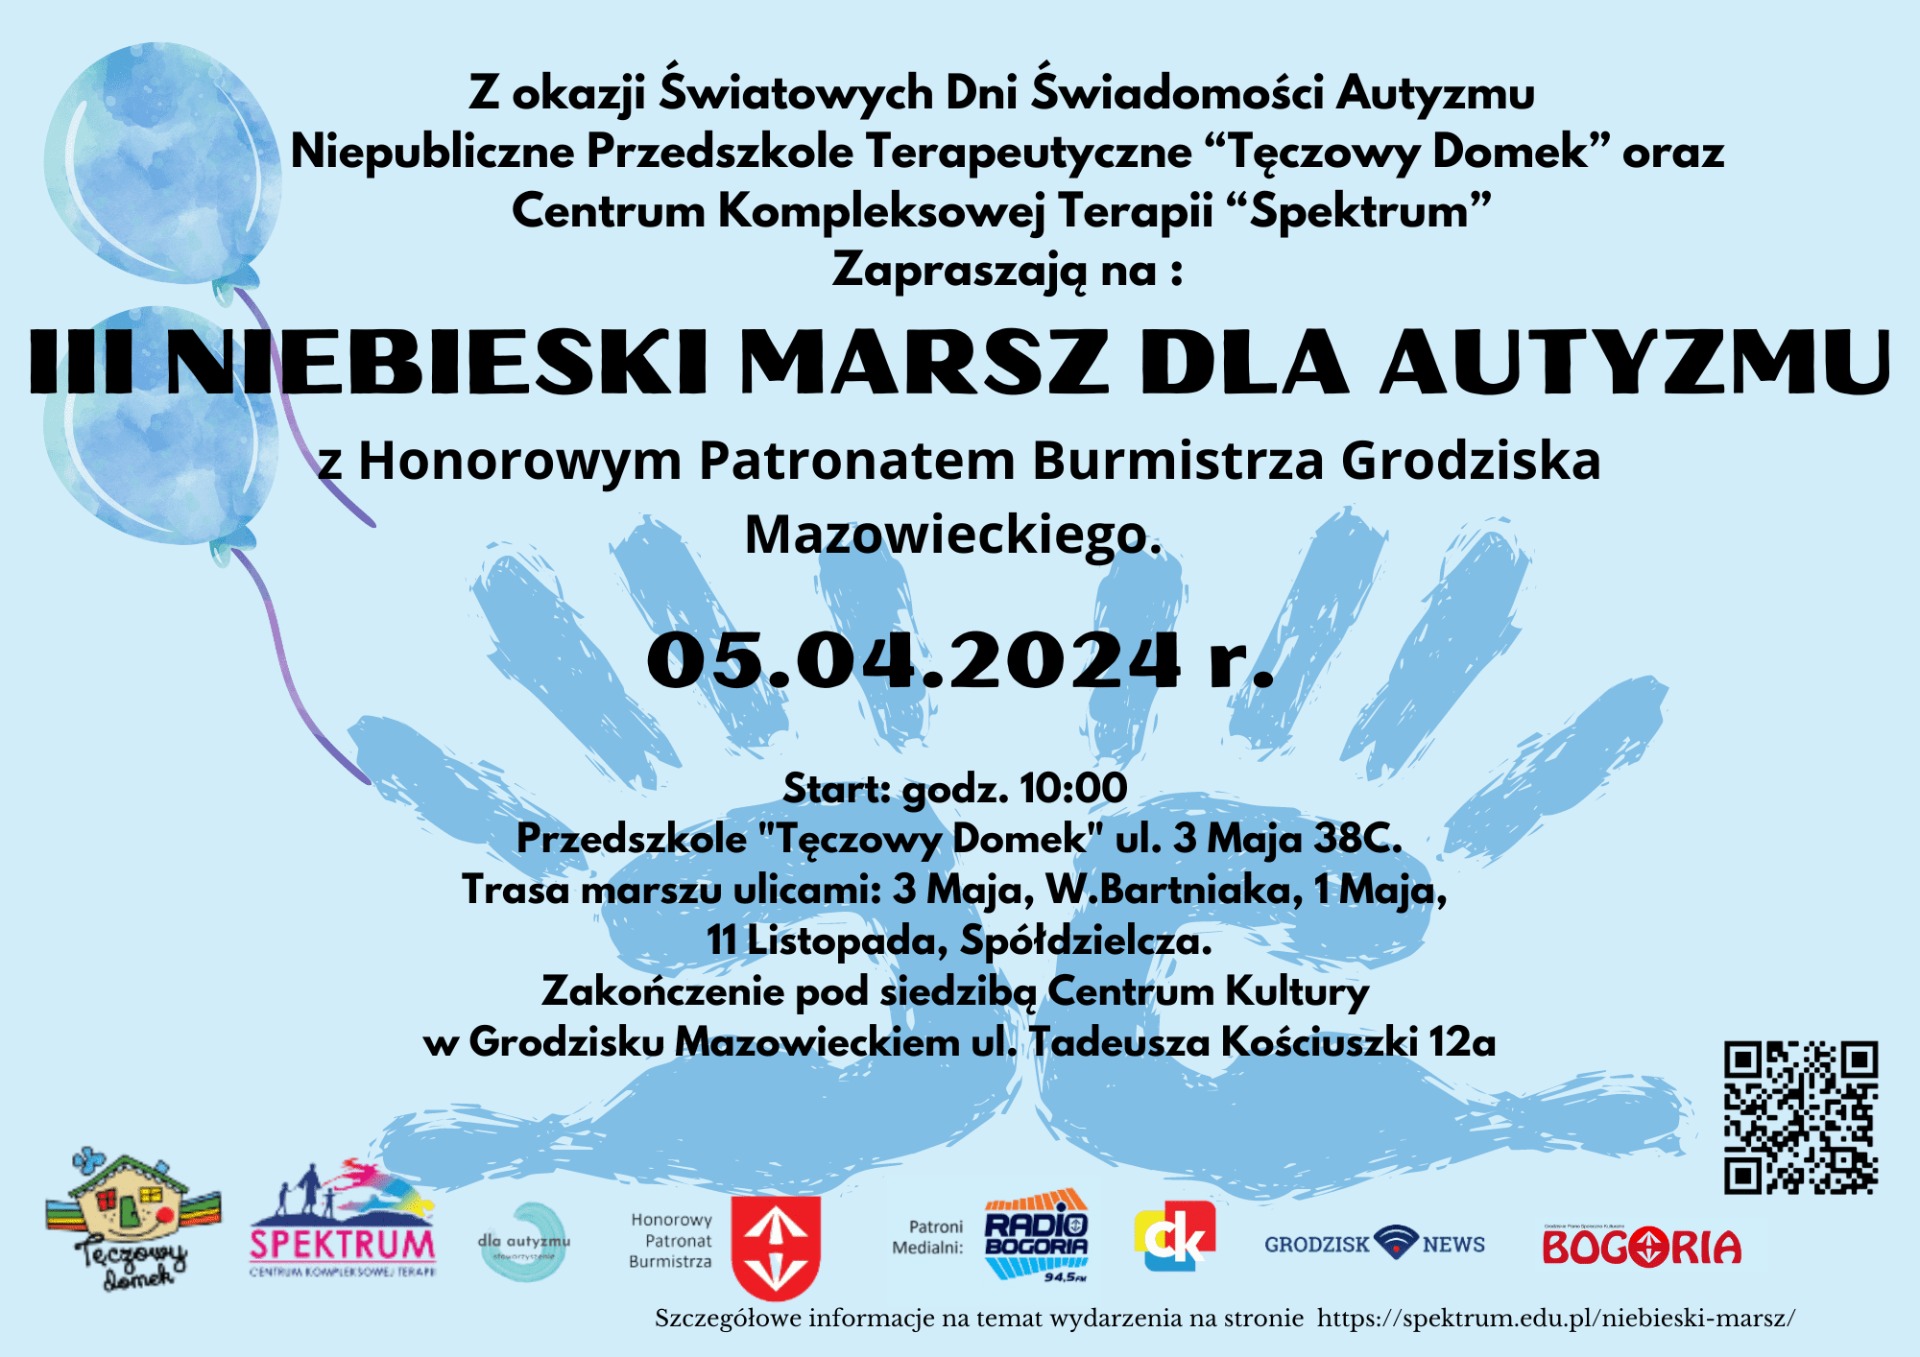 III Niebieski Marsz dla Autyzmu w Grodzisku Mazowieckim - Obrazek 1